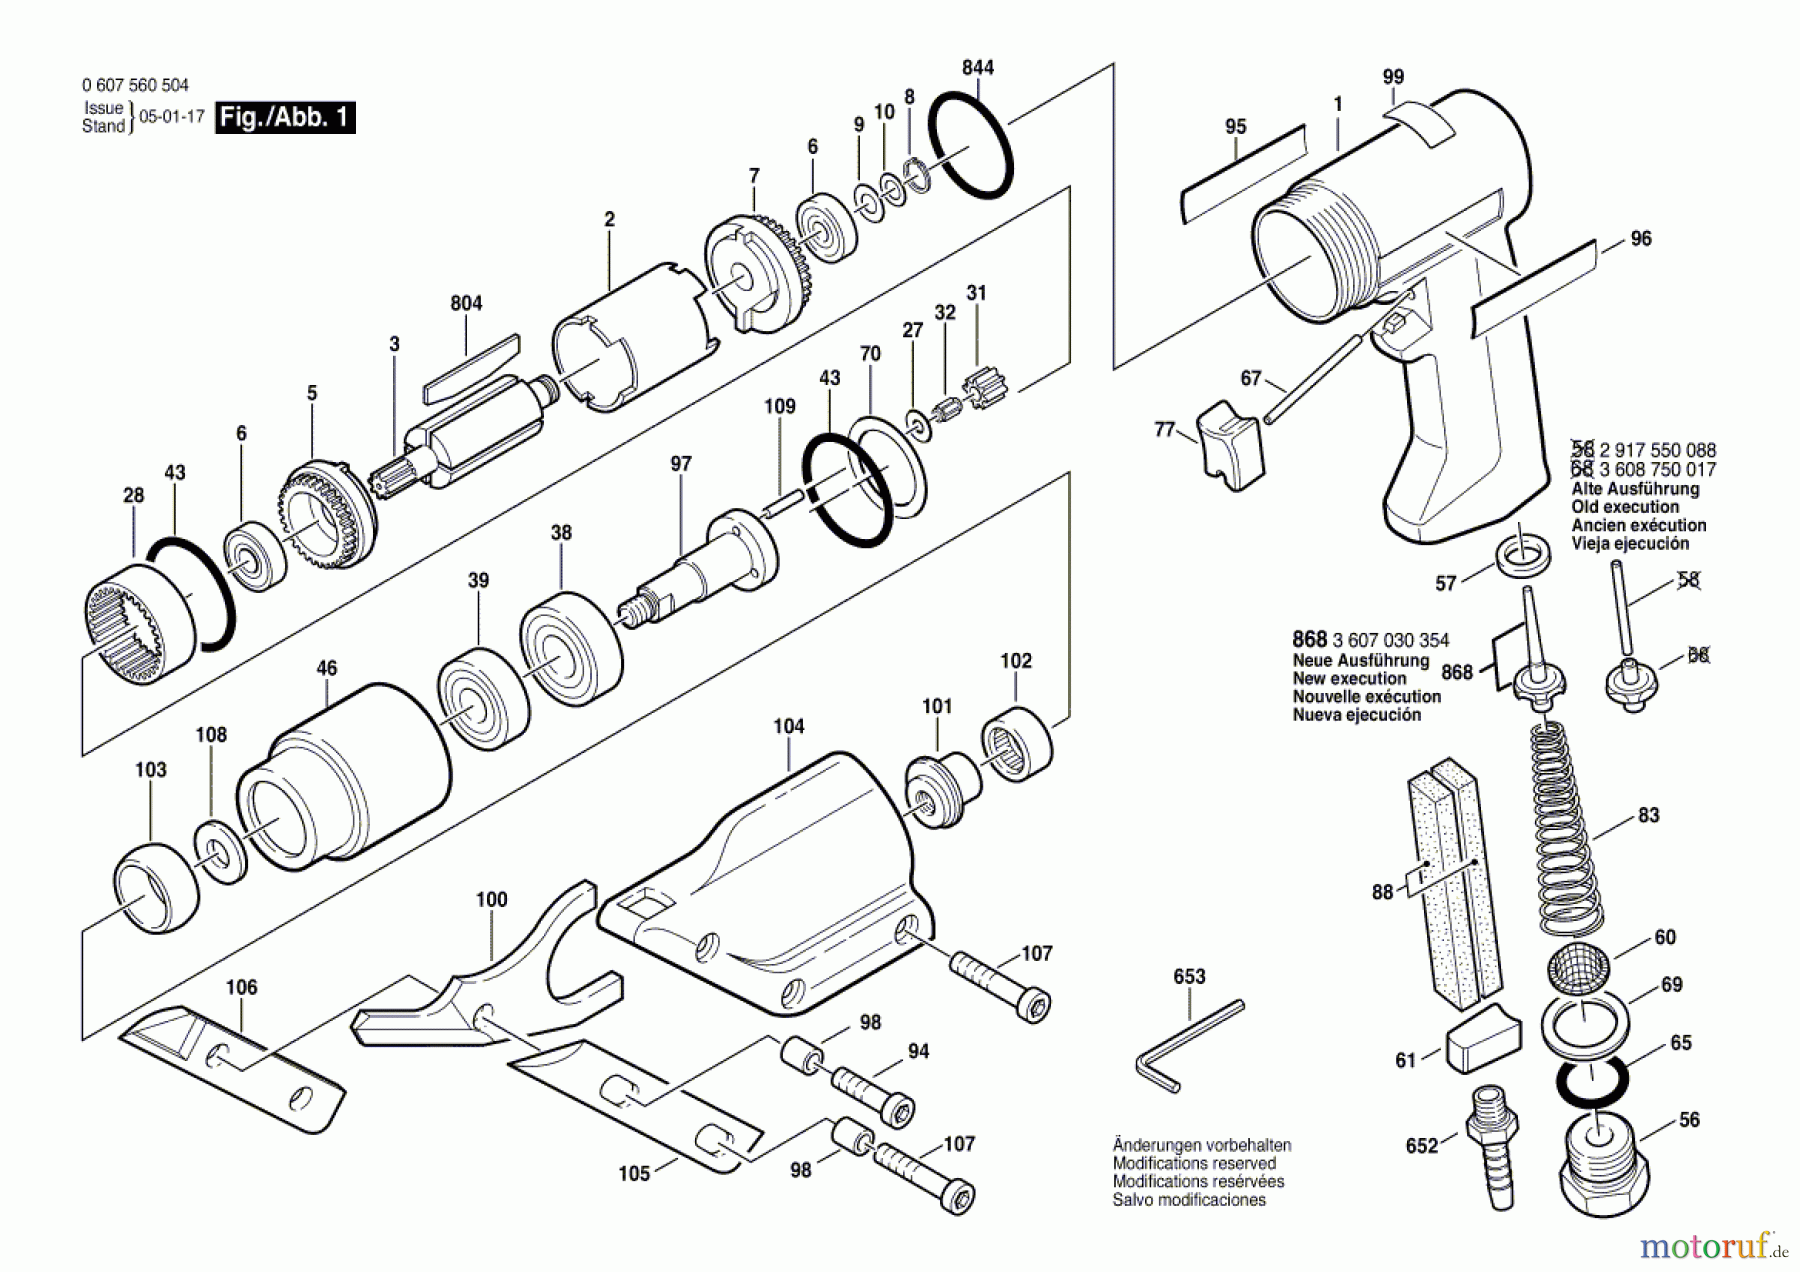  Bosch Werkzeug Pw-Schlitzschere 400 WATT-SERIE Seite 1